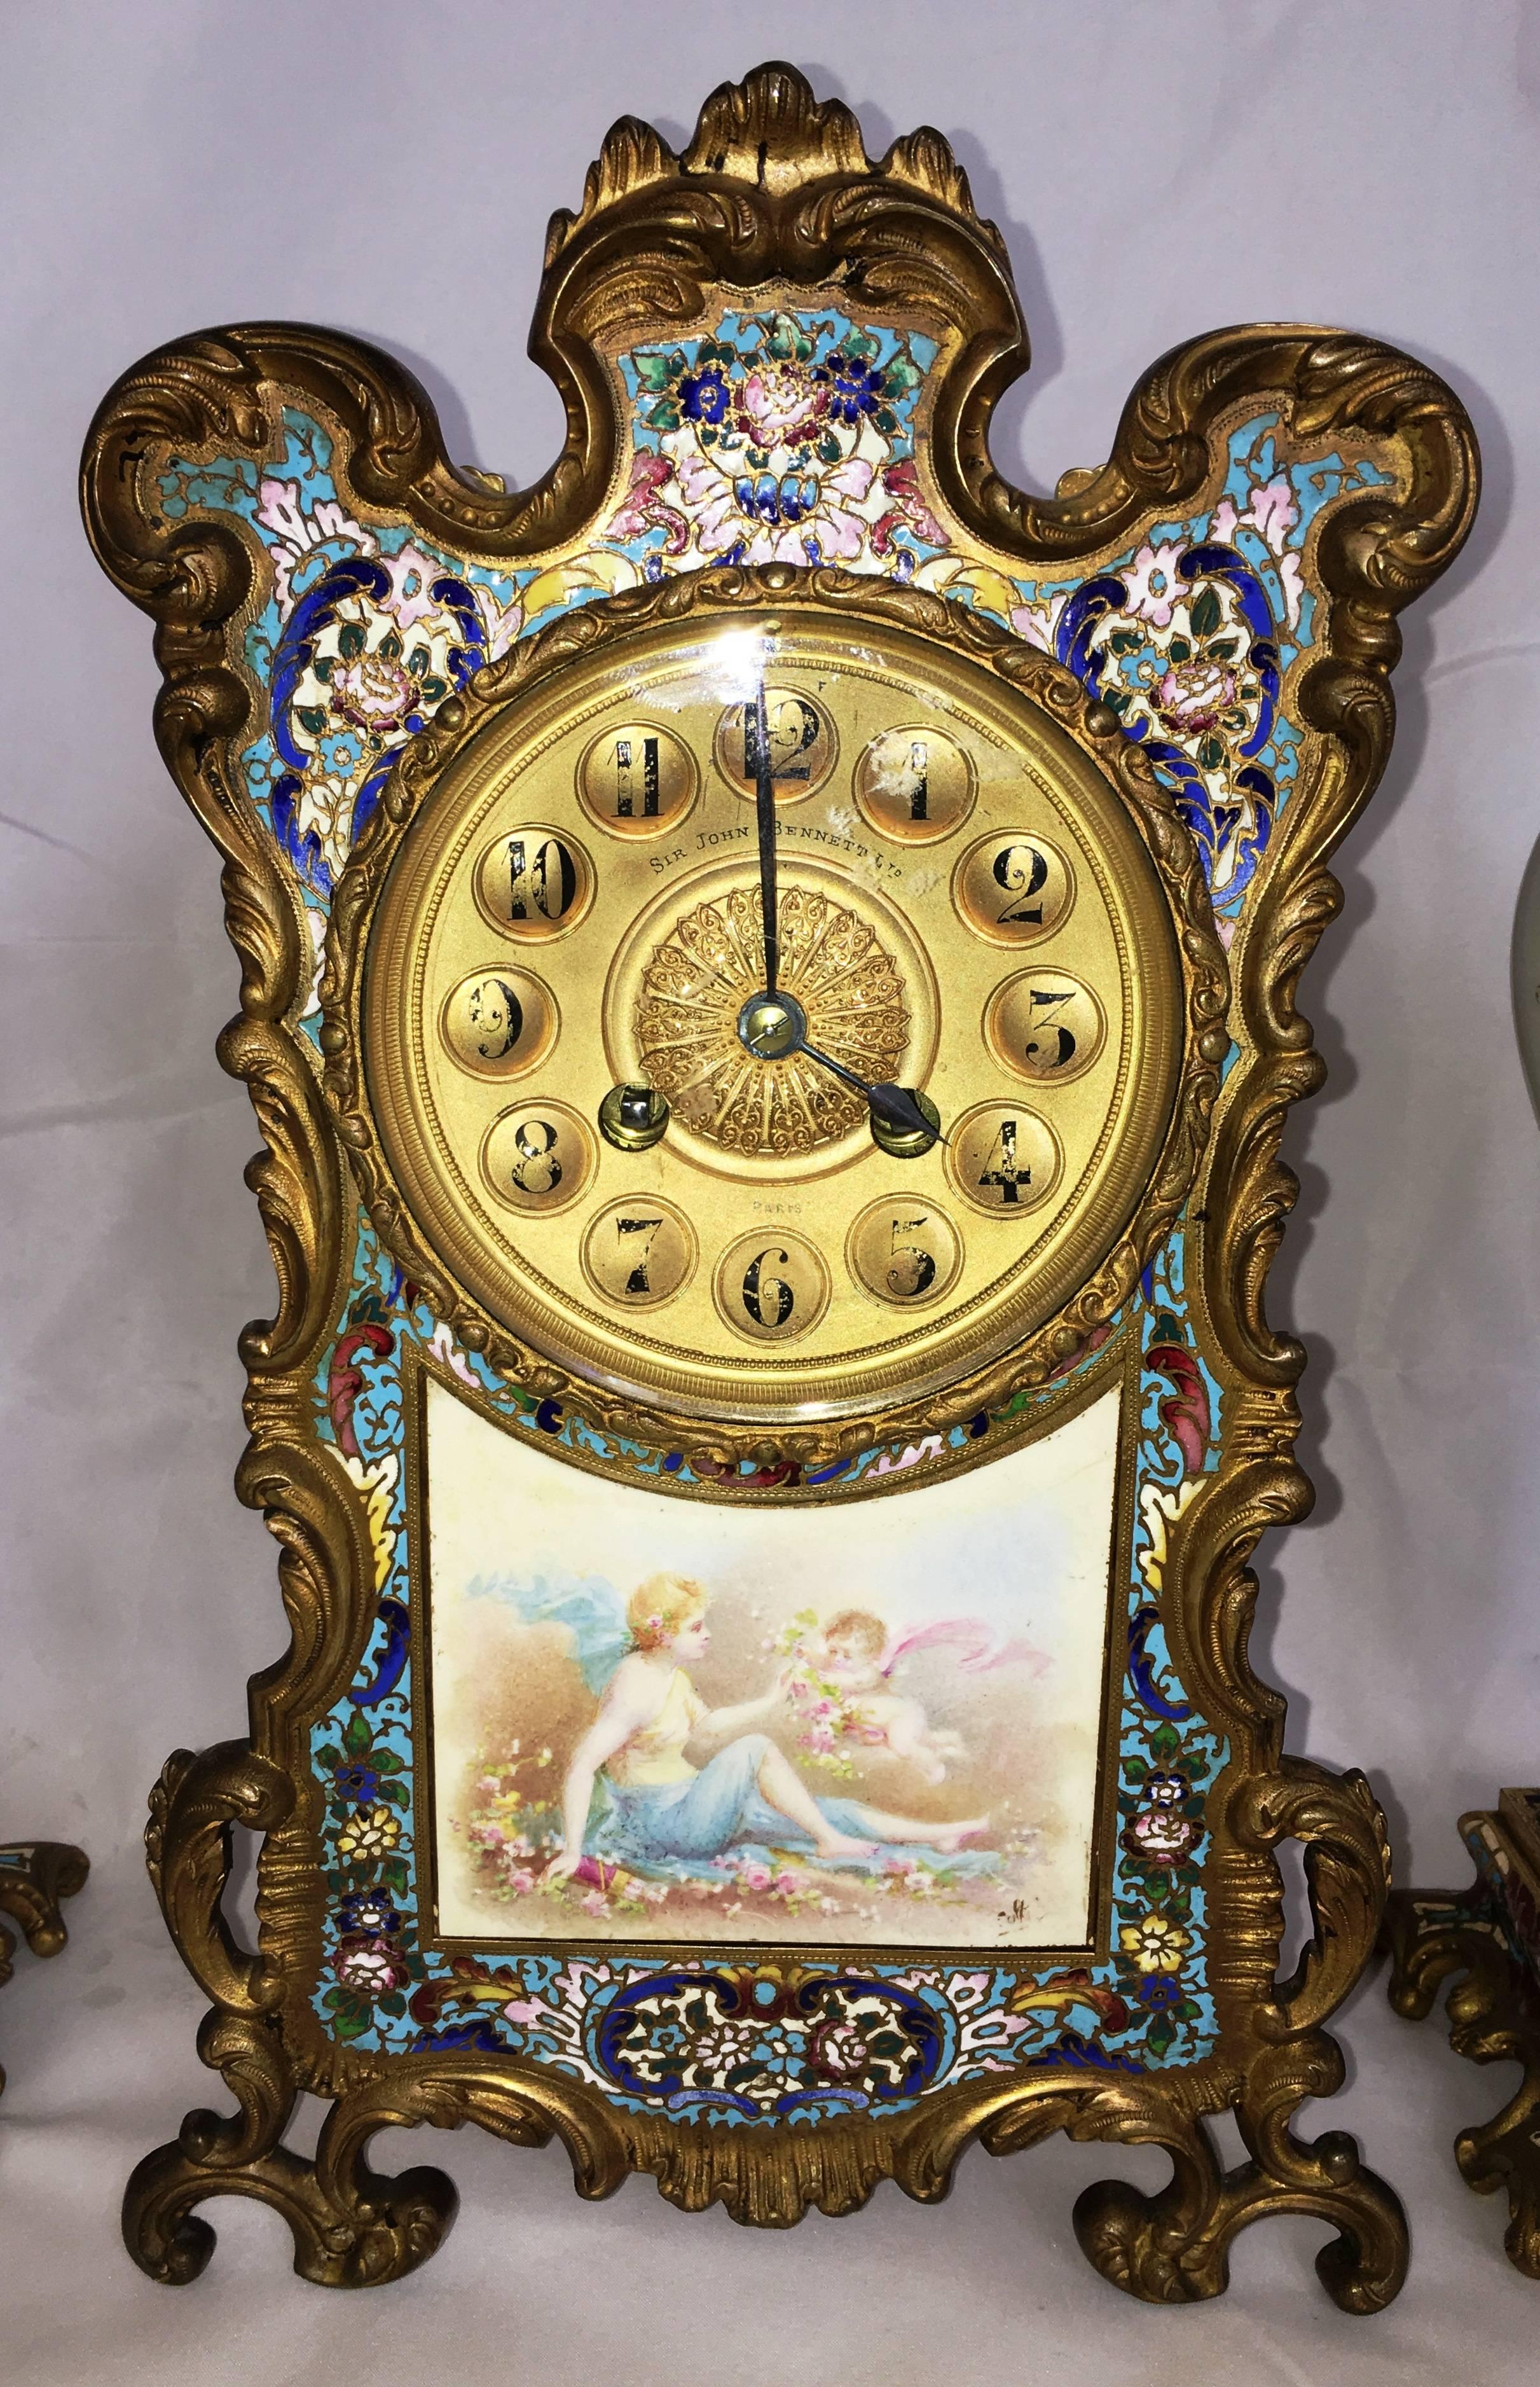 Eine sehr gute Qualität späten 19. Jahrhundert Französisch Louis XVI-Stil Champleve Emaille Uhr gesetzt. Die Uhr hat eine klassische Szene eines Cherubs, der einem jungen Mädchen Blumen überreicht. Der Rand der Uhr hat eine wunderbare farbige